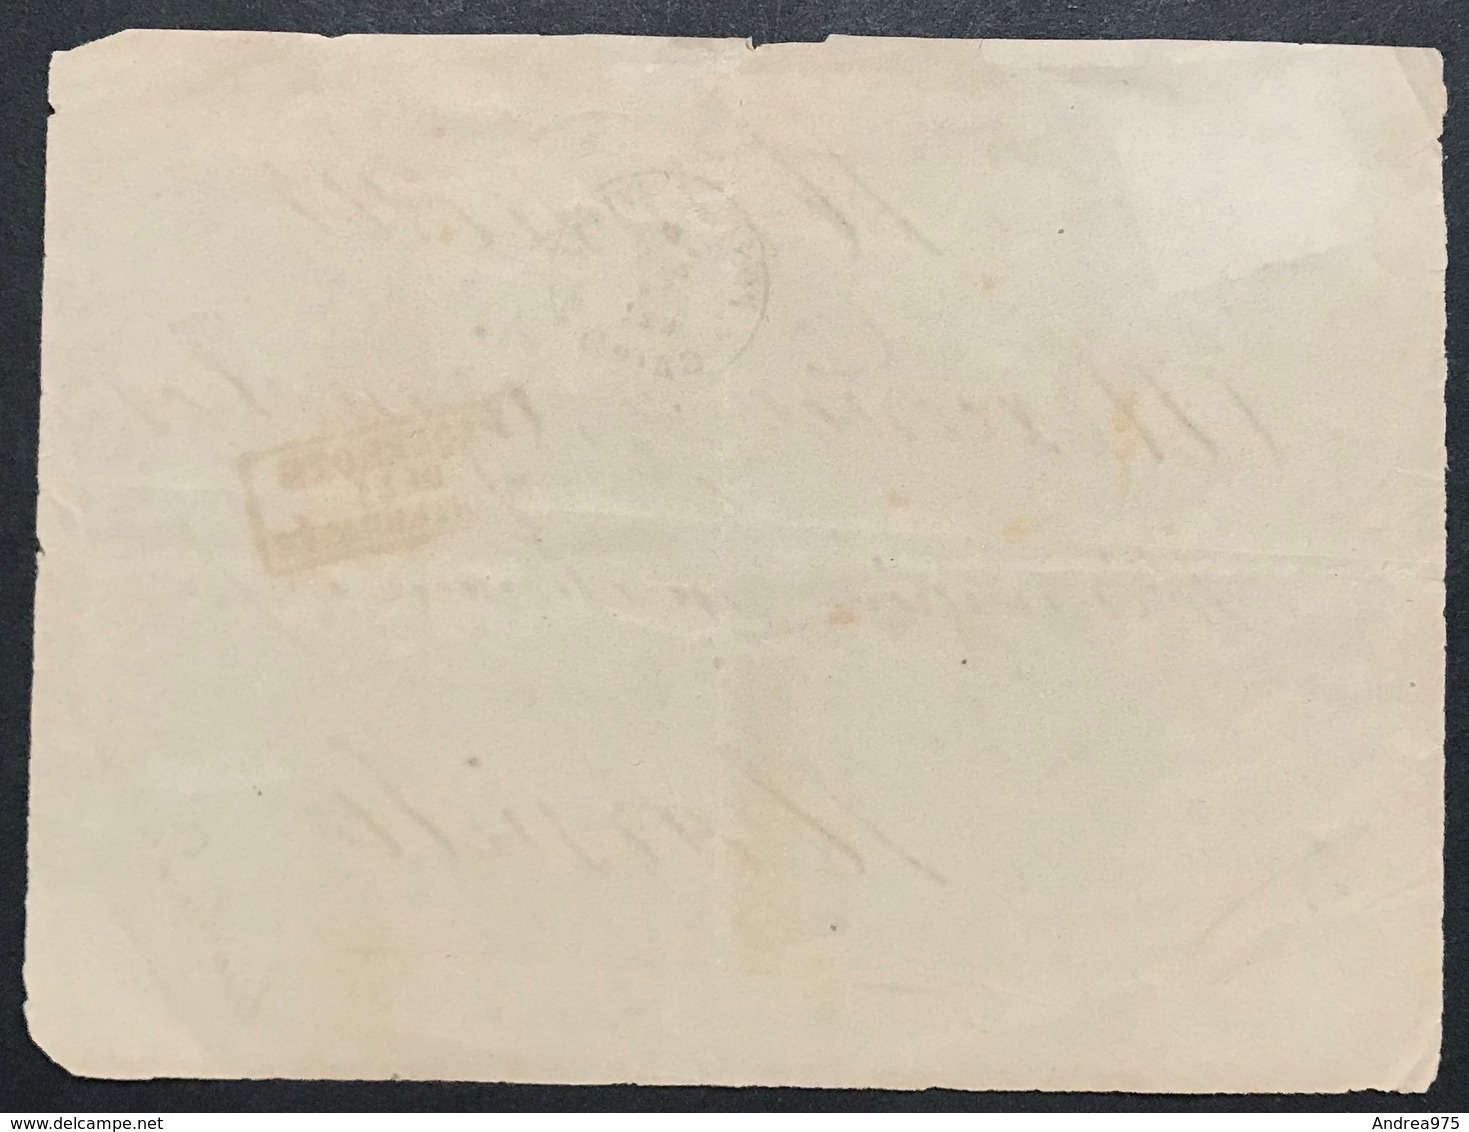 1 Piastre, Front Letter From Cairo "Poste Egiziane" 2/6/1879 To France (Marseille) + Paquebots De La Mediterranee - 1866-1914 Khedivato Di Egitto